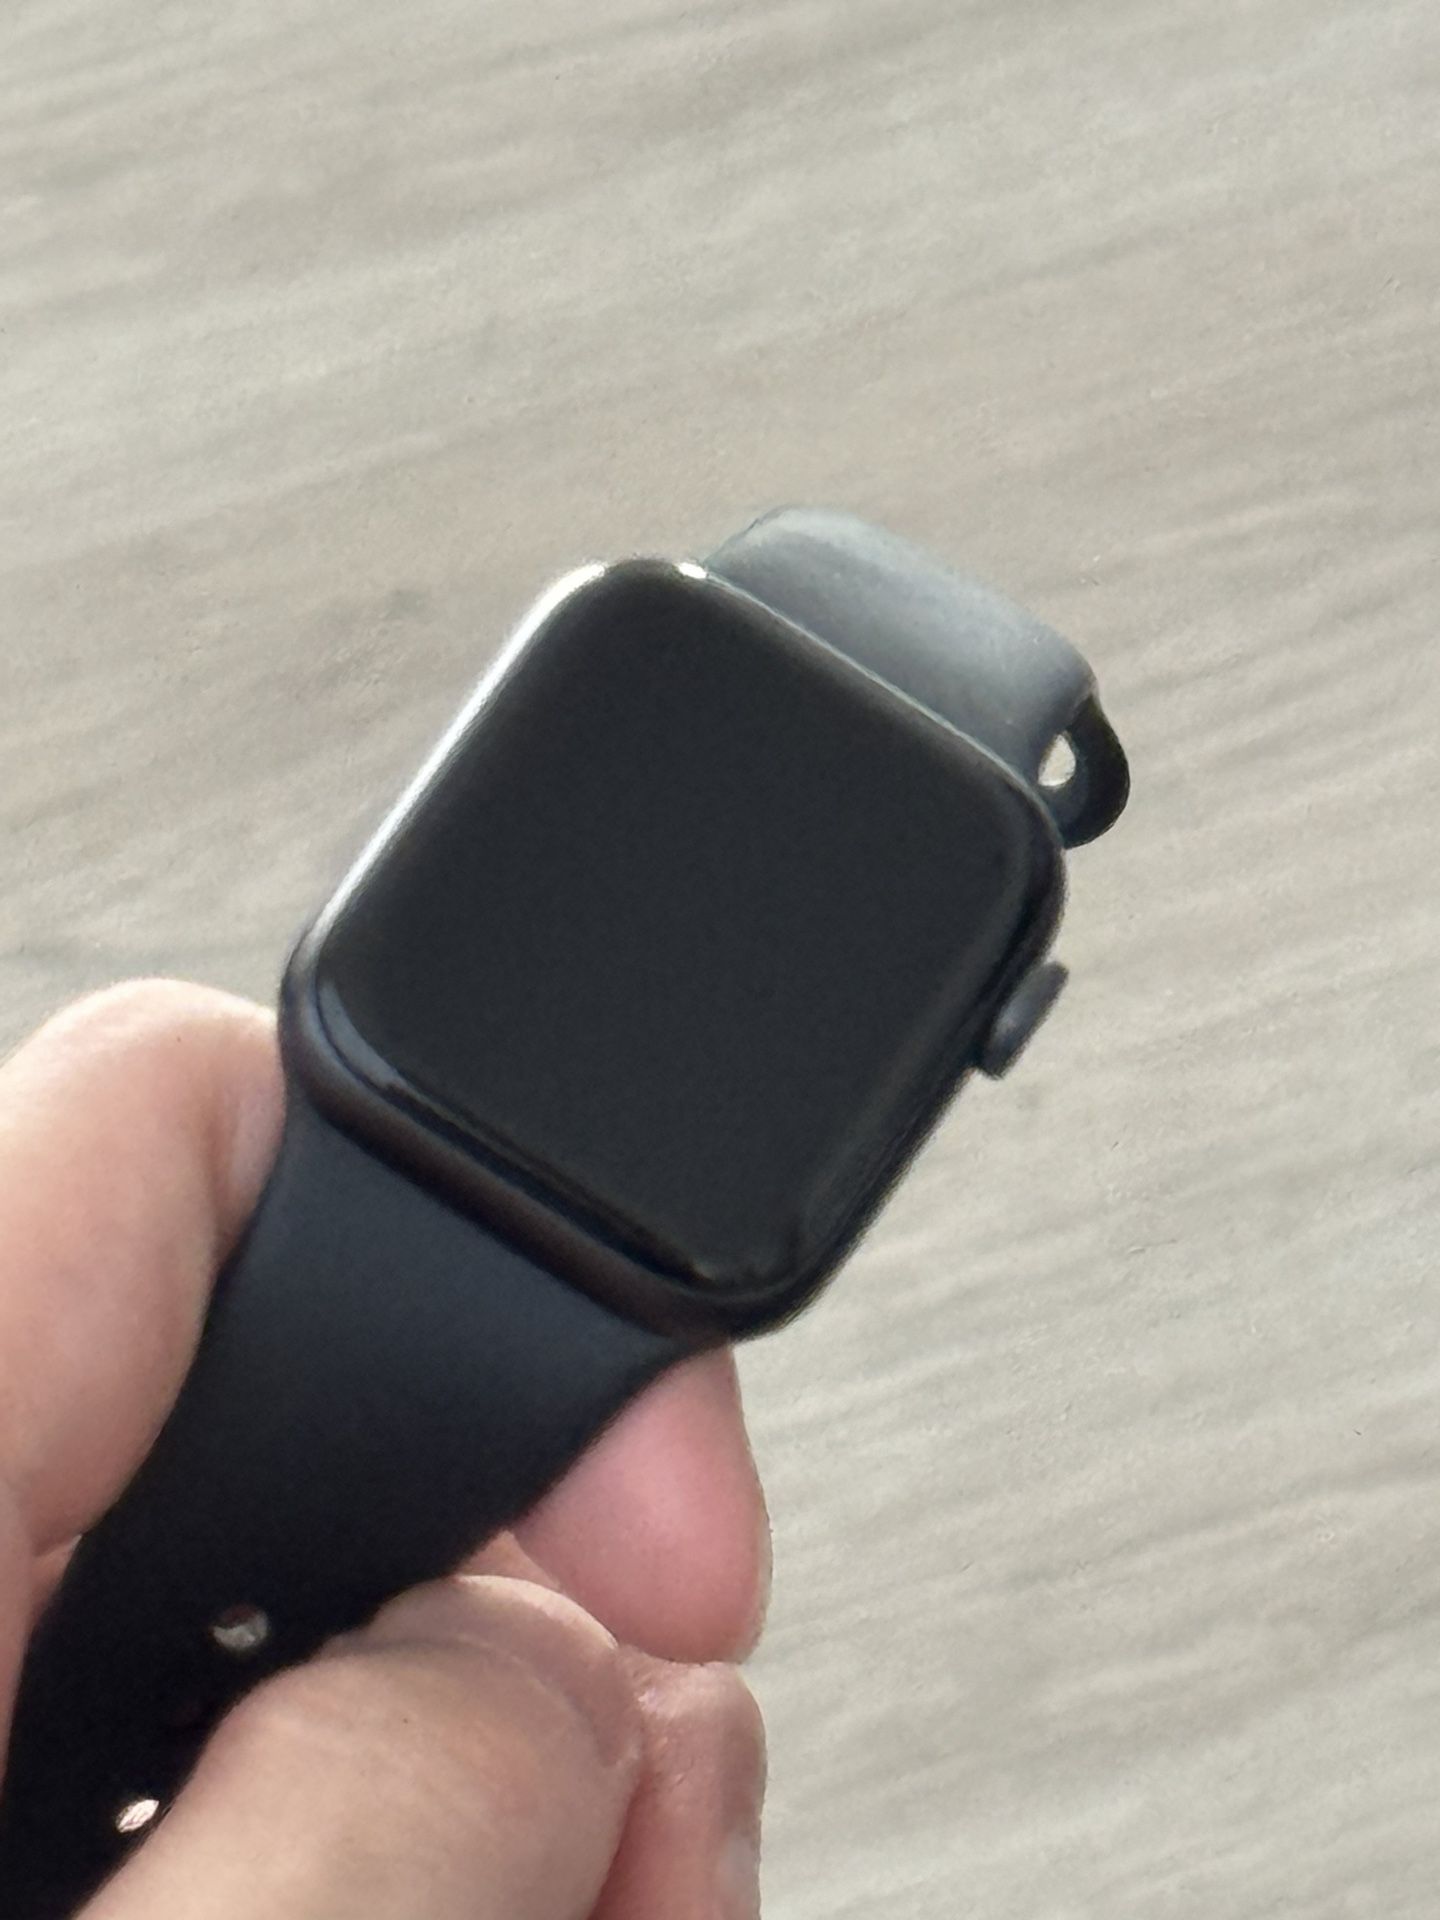 Apple Watch 6 40mm